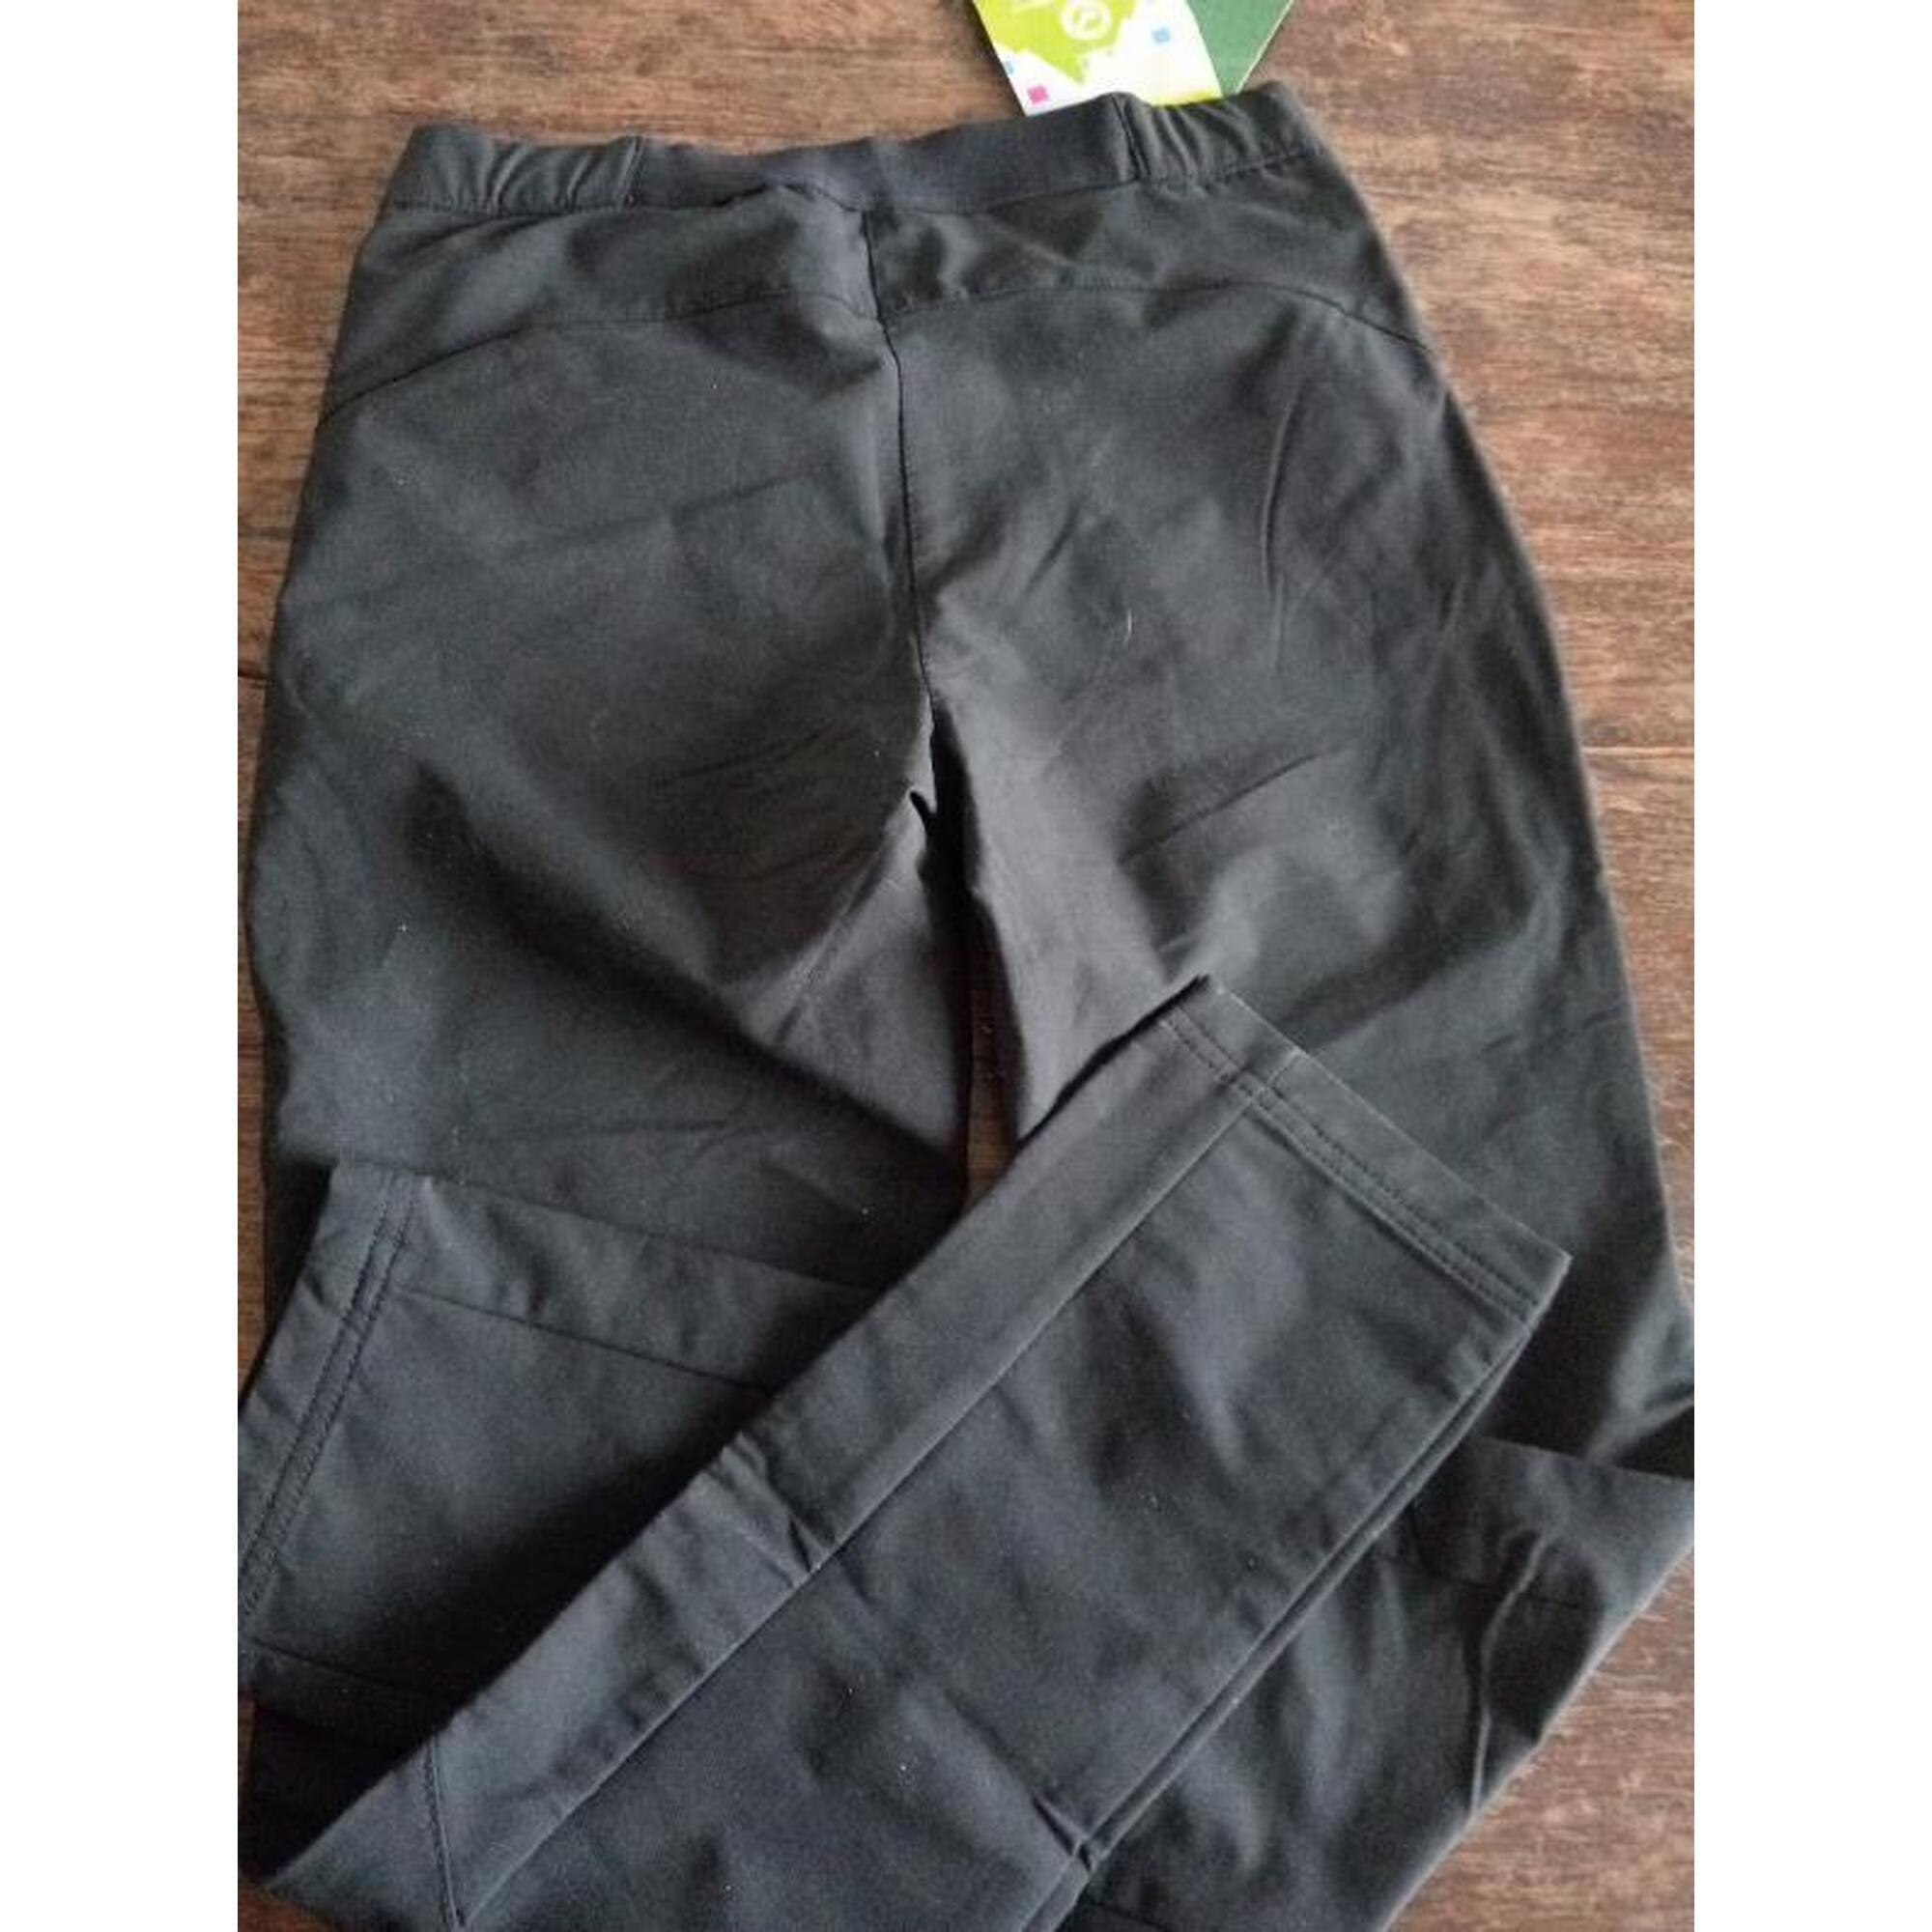 C2C - Pantalon Pentre Noir Fille